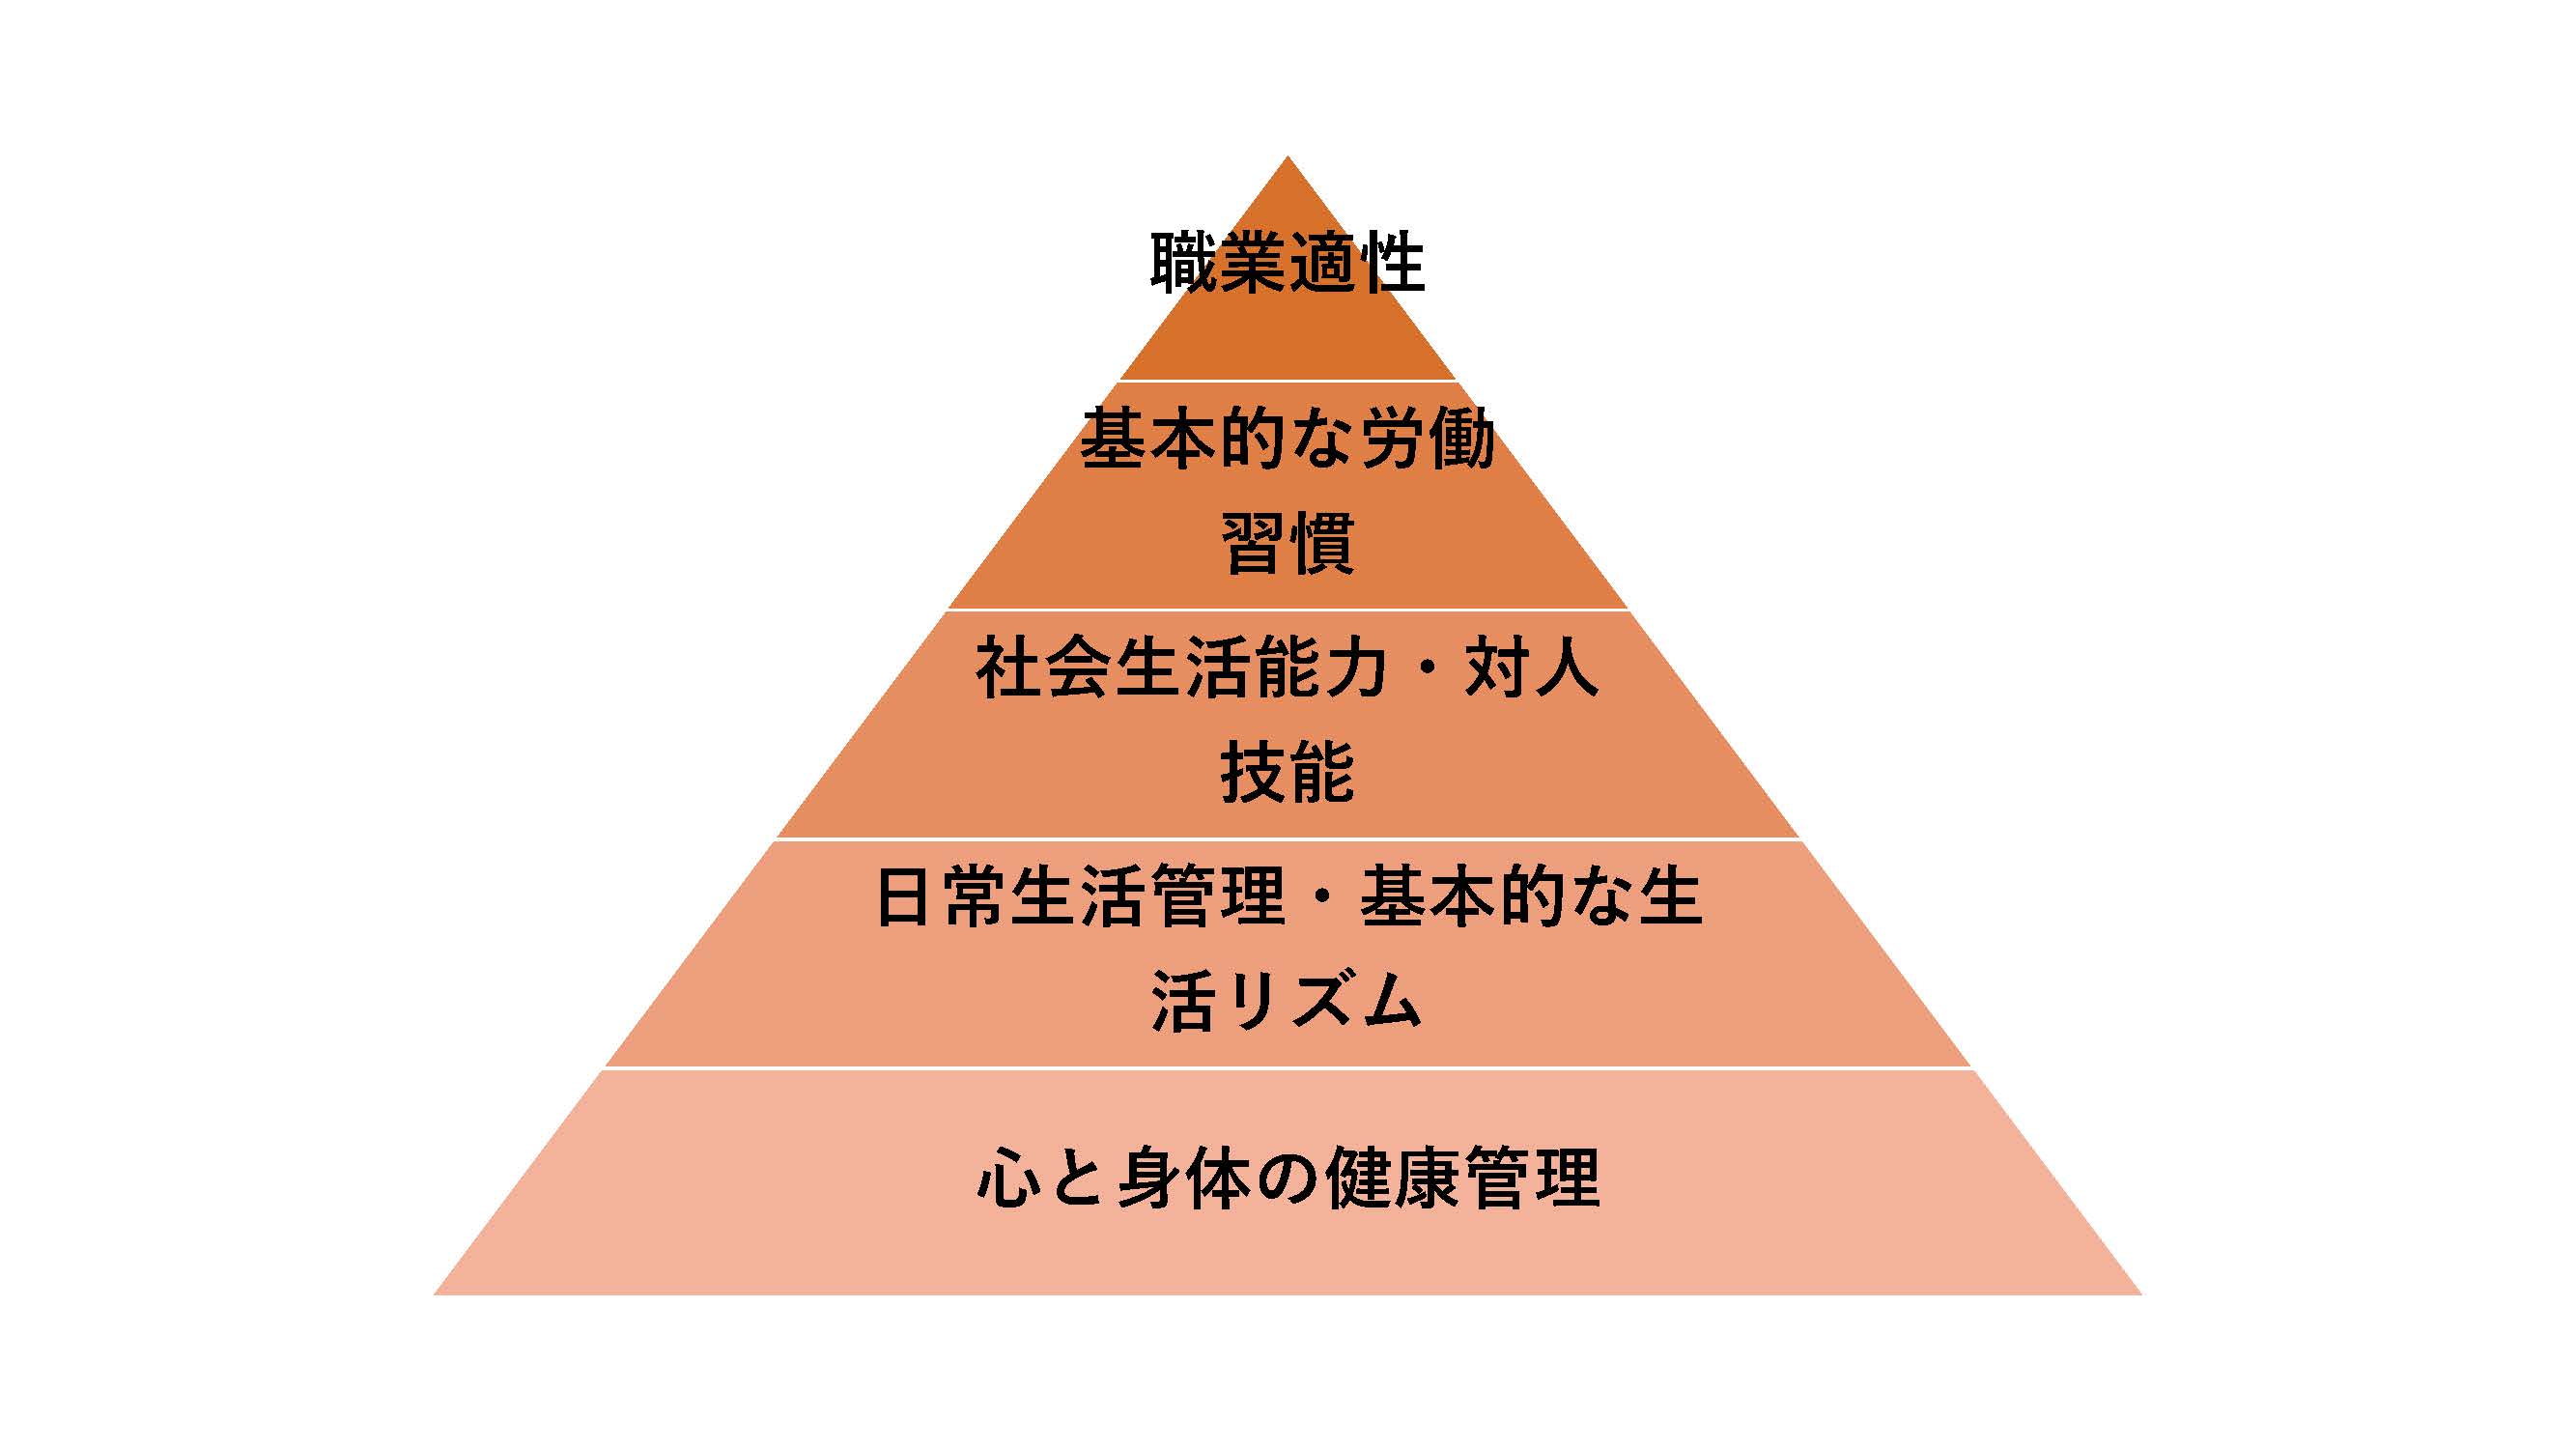 【横須賀】20210203(職業準備性ピラミッド) (1)